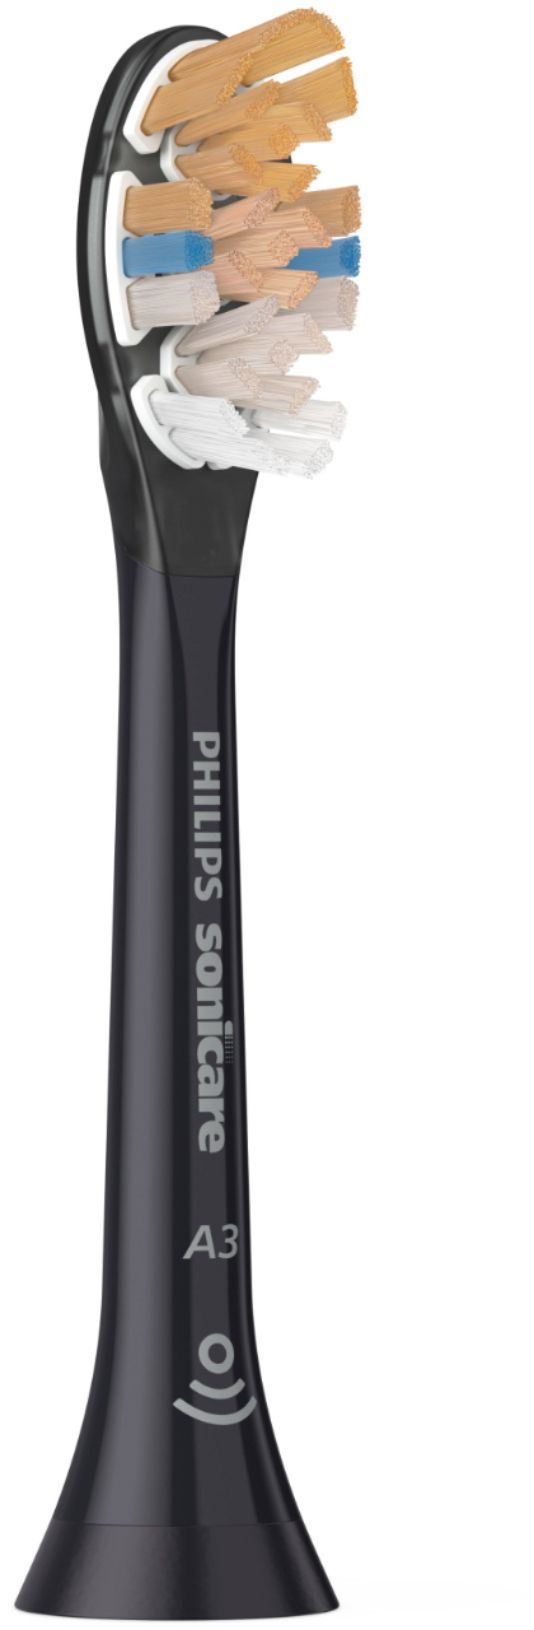 Philips Aufsteckbürsten Sonicare A3, Premium All-in-One, HX9092/11